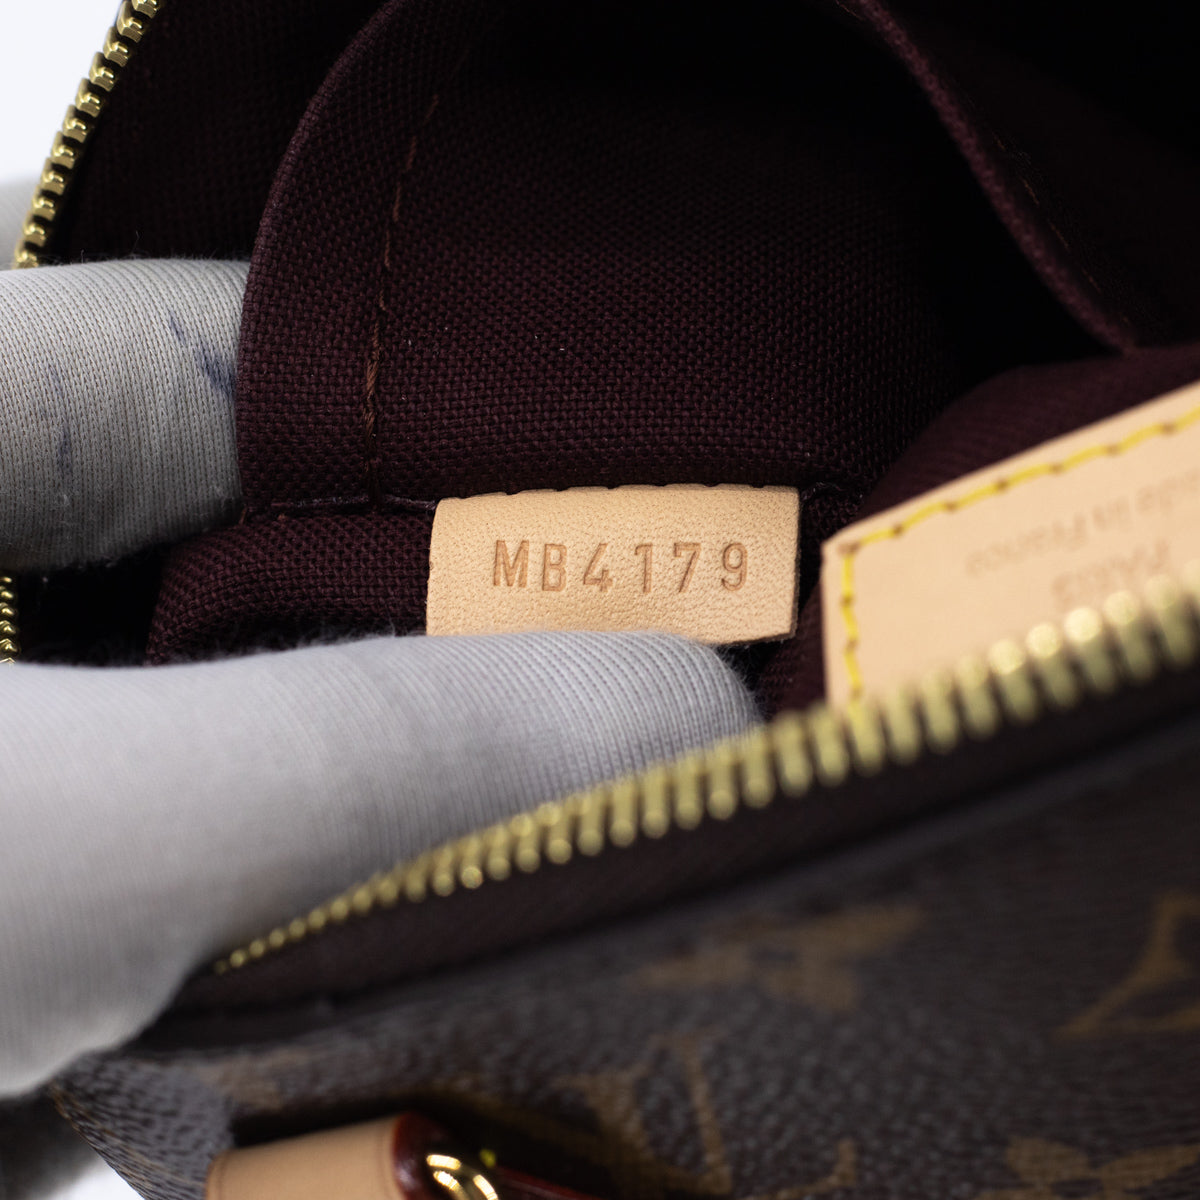 Louis Vuitton Rivoli PM Bag Review 